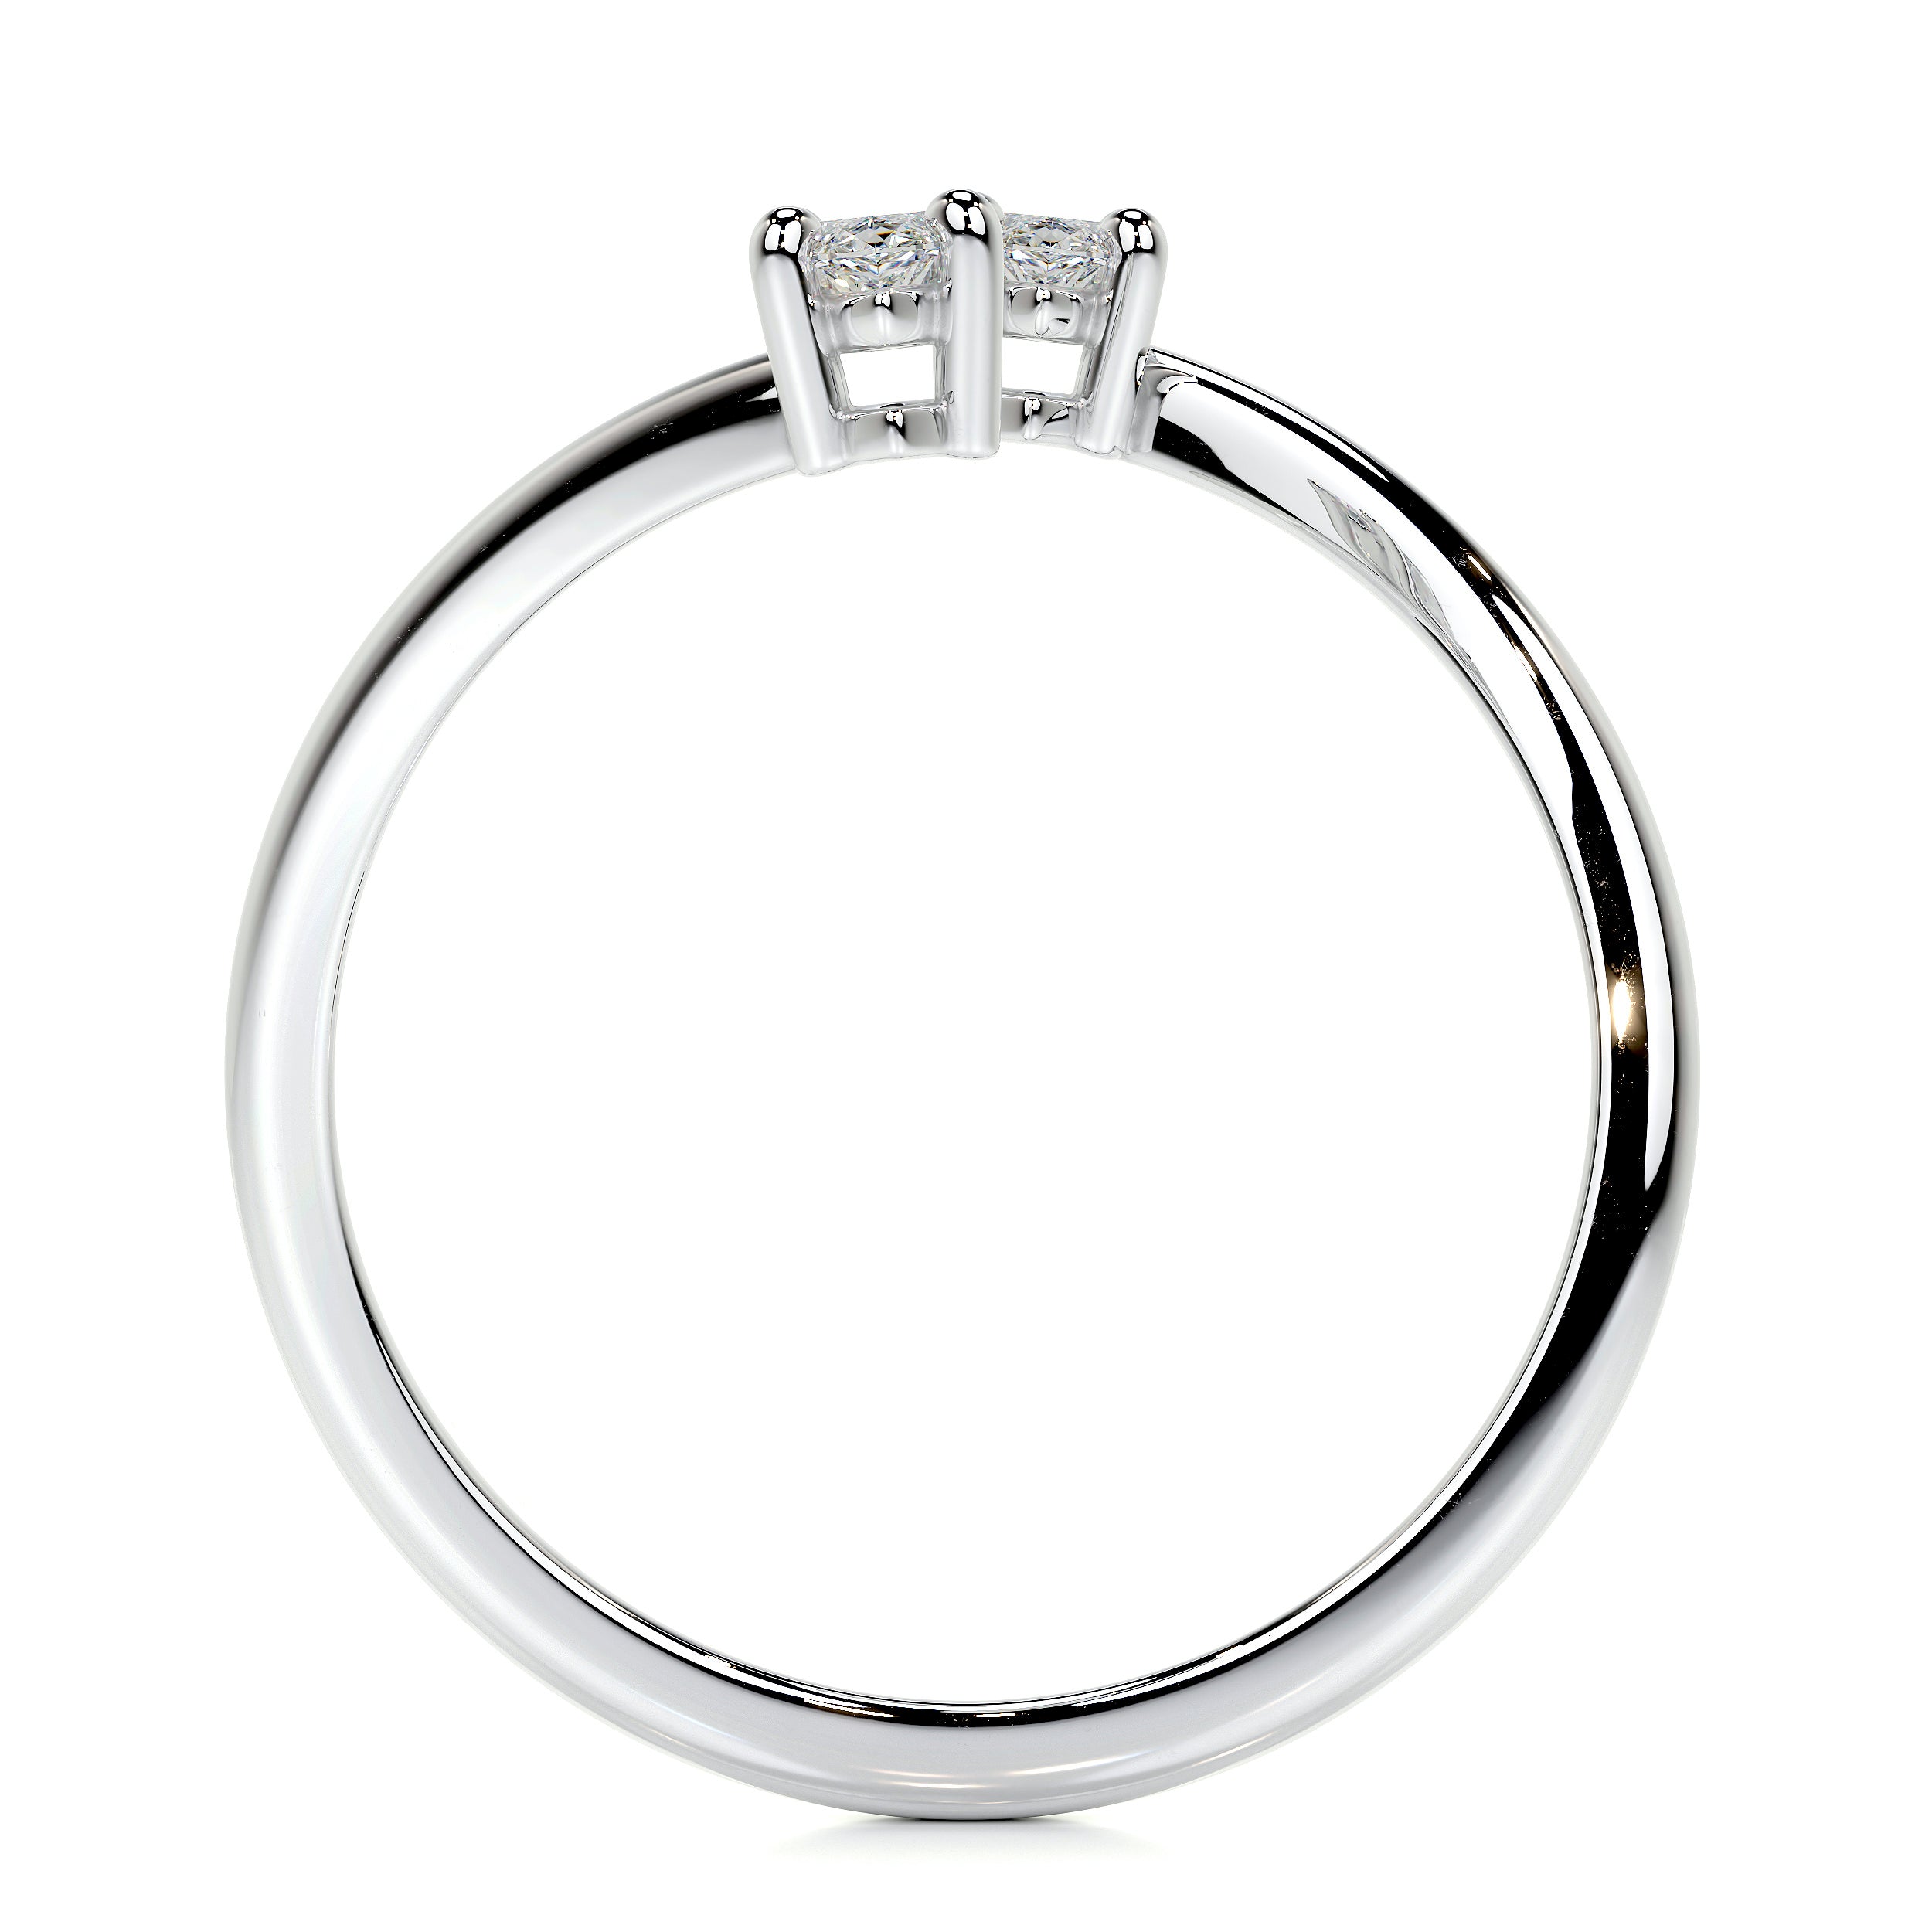 Anita Lab Grown Fashion Ring   (0.36 Carat) -Platinum